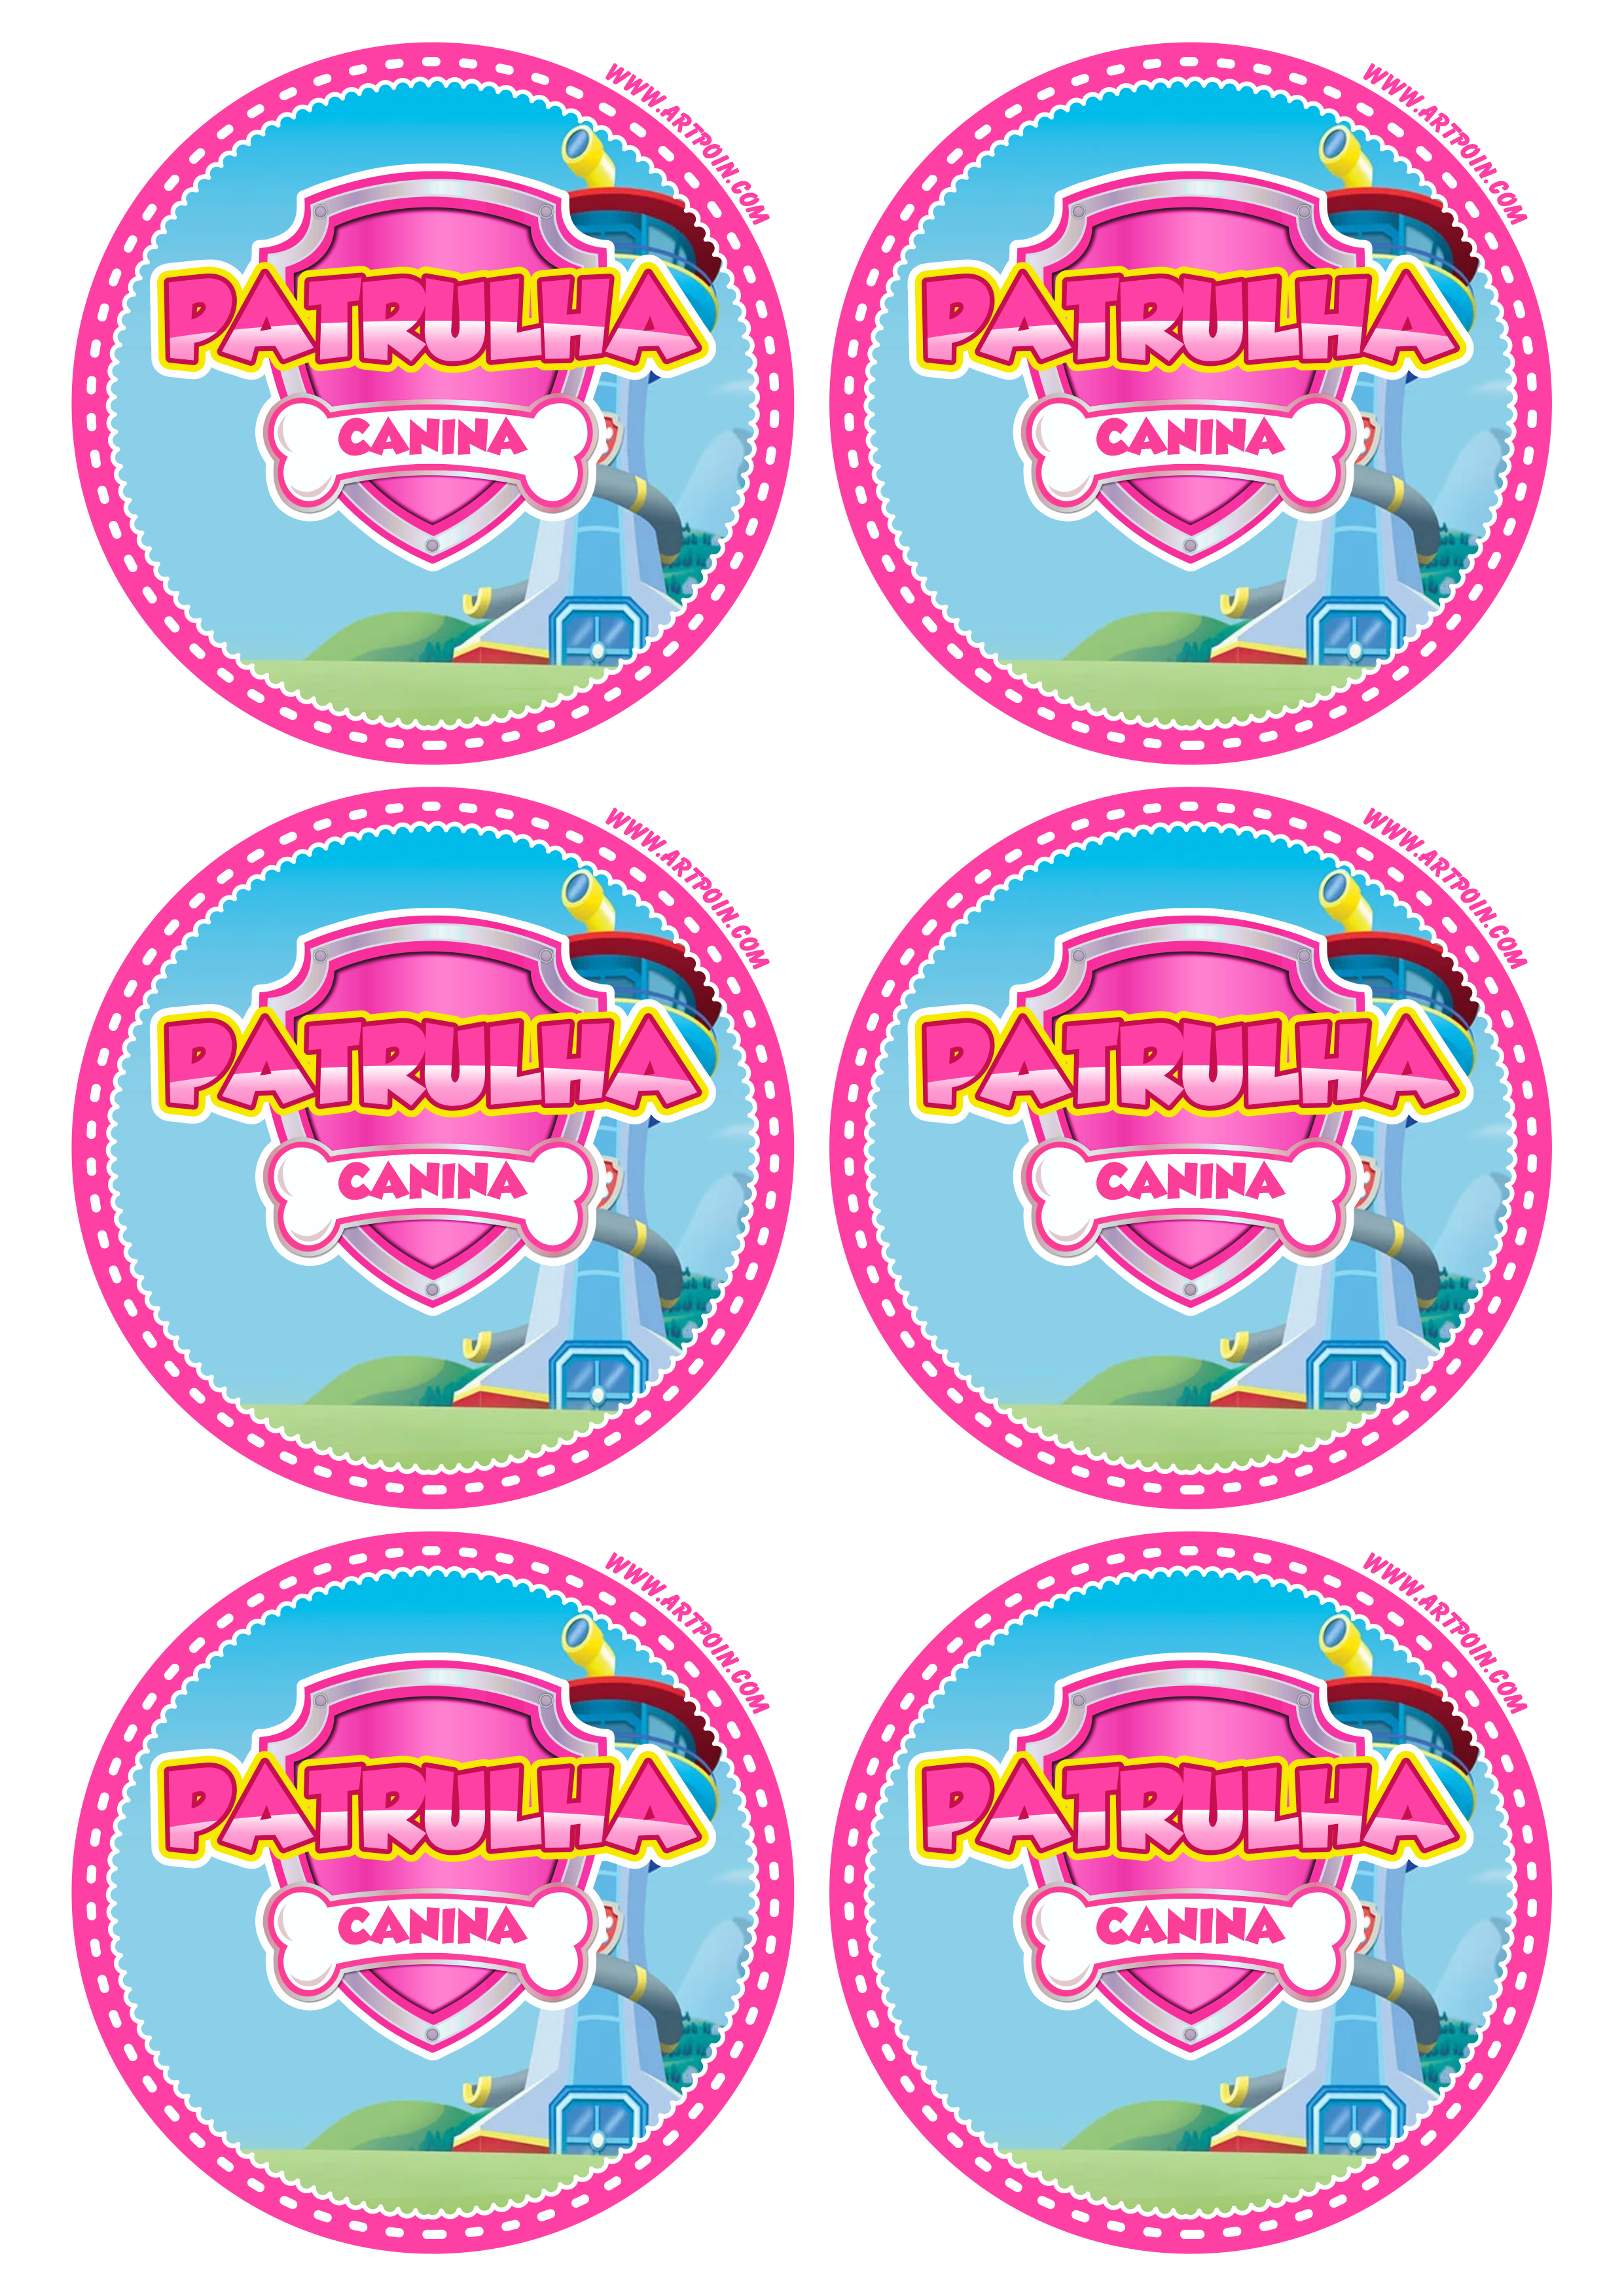 Patrulha canina rosa pink adesivo redondo tag sticker decoração de aniversário infantil artigos de papelaria 6 imagens png